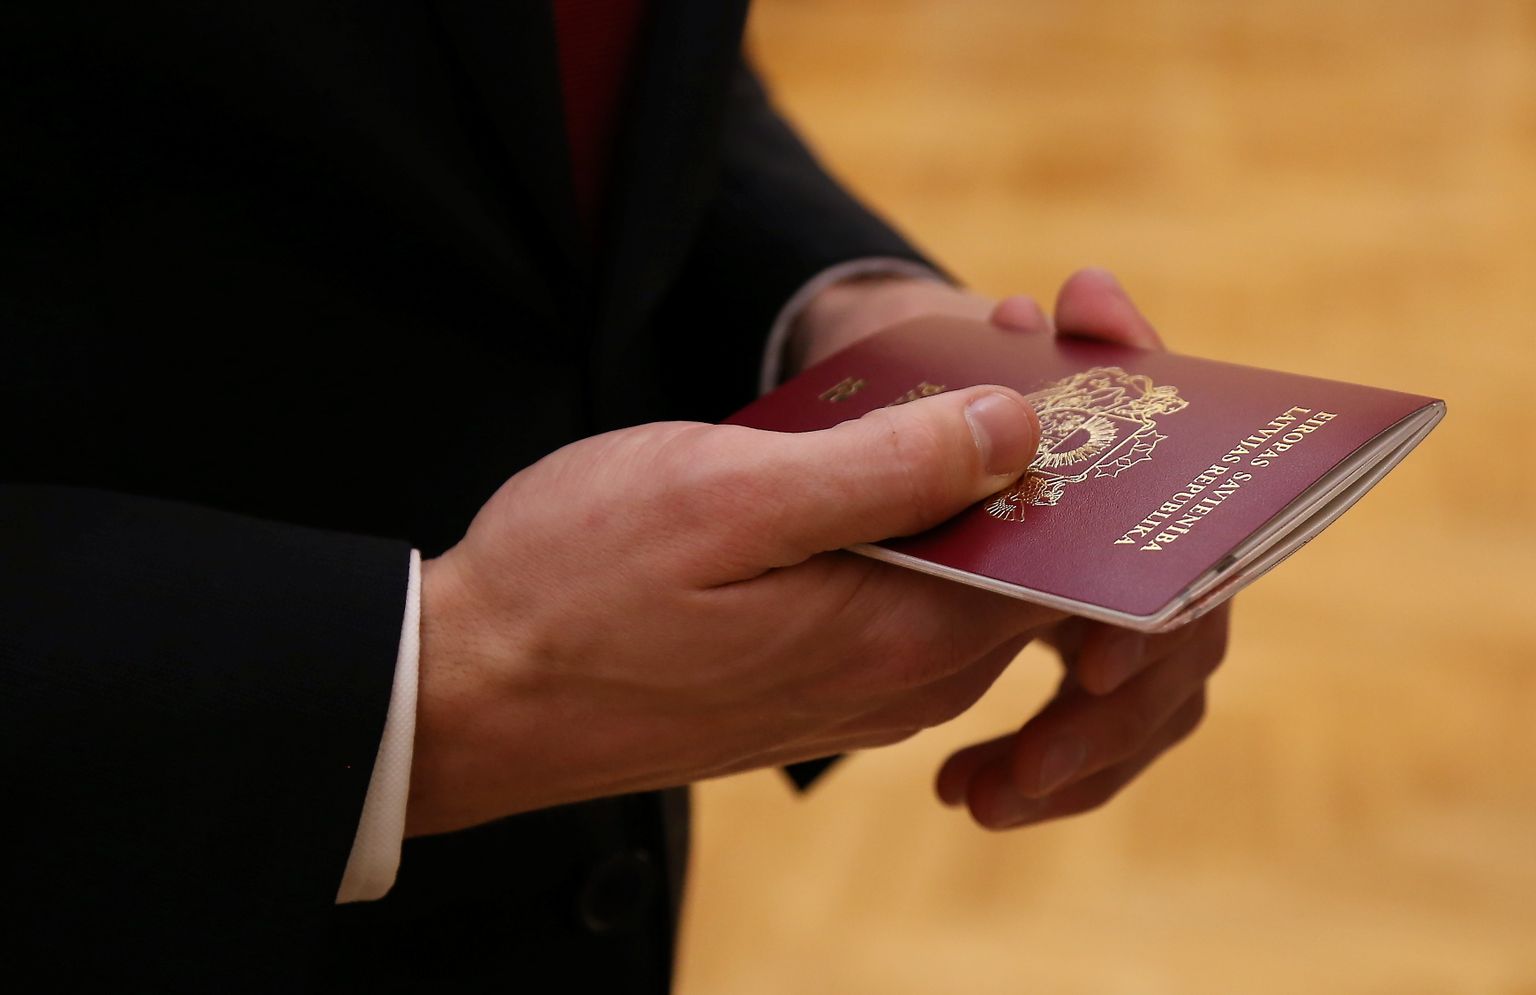 Pieccīņnieka Ruslana Nakoņečnija Latvijas pilsoņa pase svinīgajā pasākumā Saeimas namā.